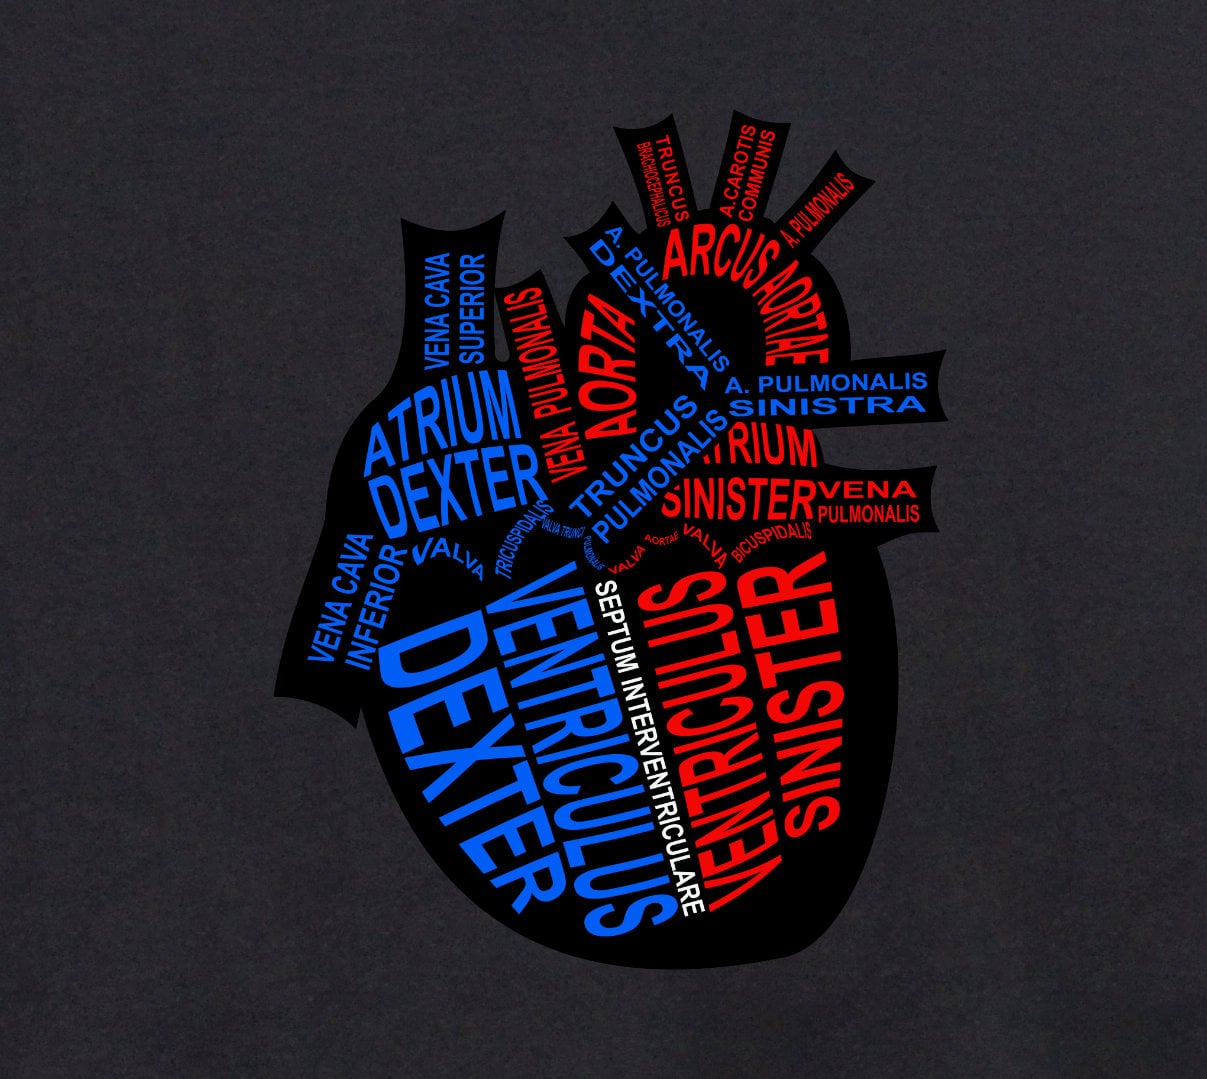 Motiv Herz: Anatomie mit medizinischen Bezeichnungen für Ärzte und Medizin-Studenten - Wort Anatomie